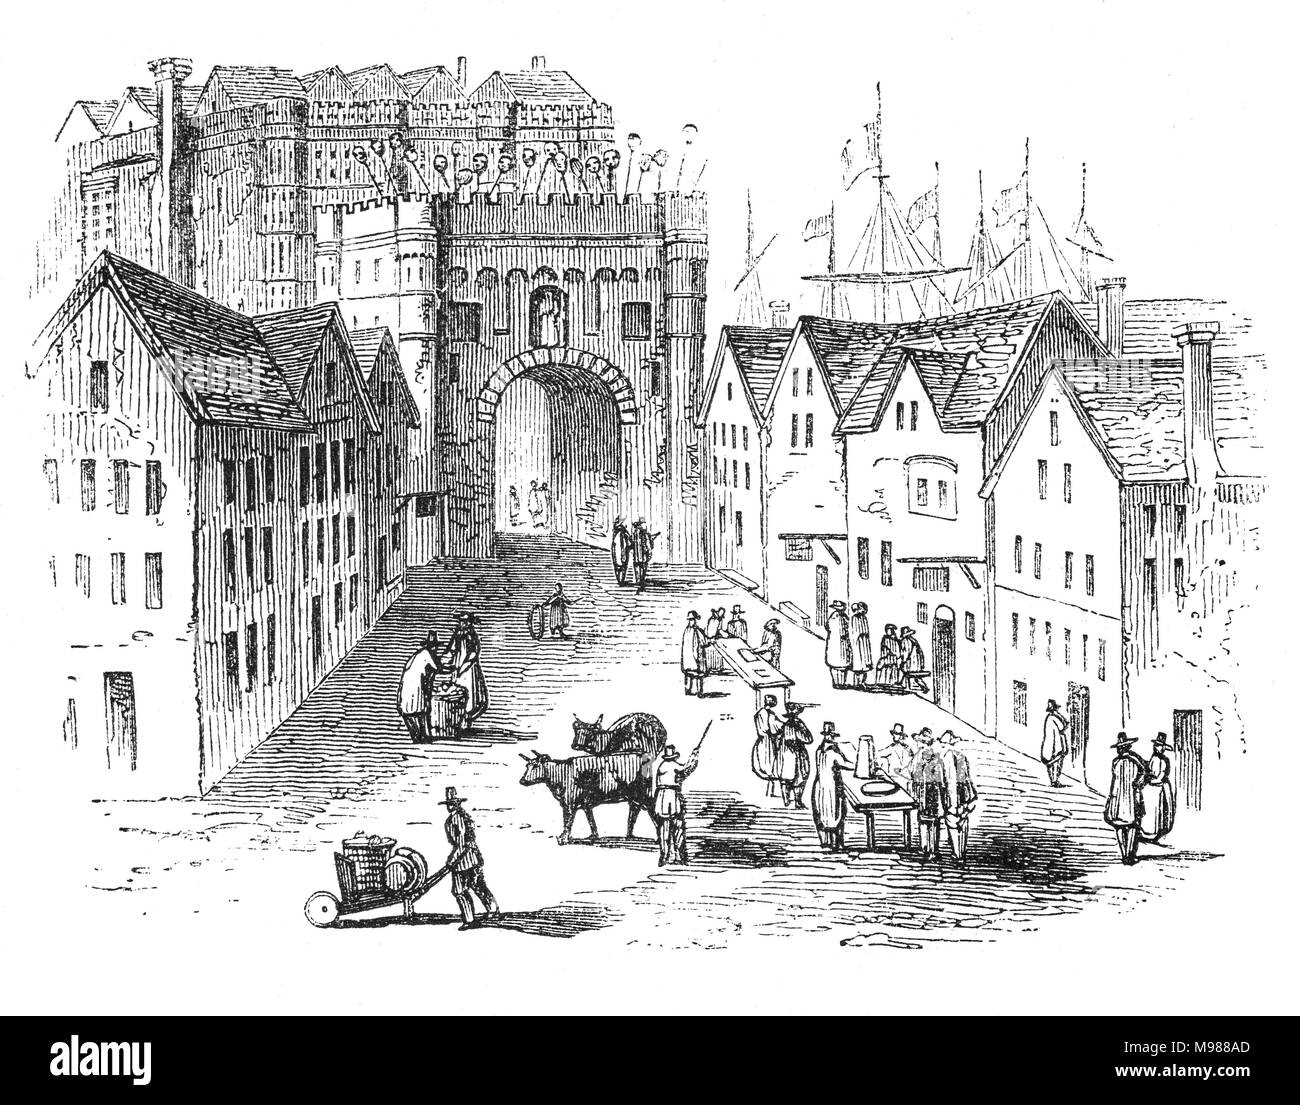 L'entrée de l'ancien pont de Londres (1209-1831) sur la Tamise sur le côté de Southwark. Le Roi Henry II a commandé un nouveau pont de pierre à la place de l'ancien, avec une chapelle à son centre dédié à Becket comme martyr. Les travaux de construction ont commencé en 1176 et a été terminé en 1209 pendant le règne du Roi Jean ; il a fallu 33 ans pour terminer. City of London, England Banque D'Images